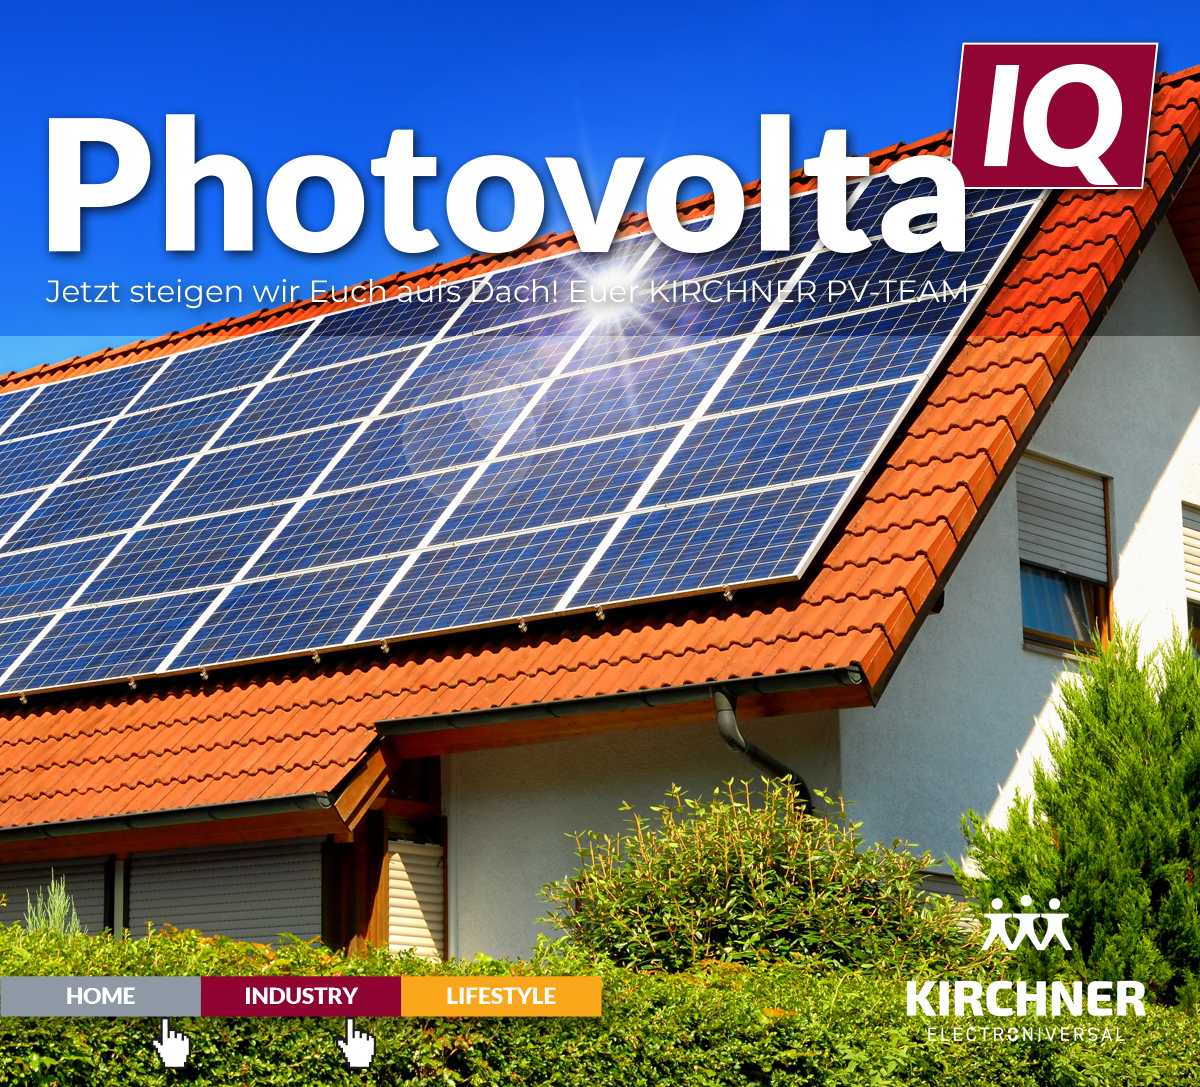 PhotovoltaIQ in Coburg: Wir steigen Euch aufs Dach!